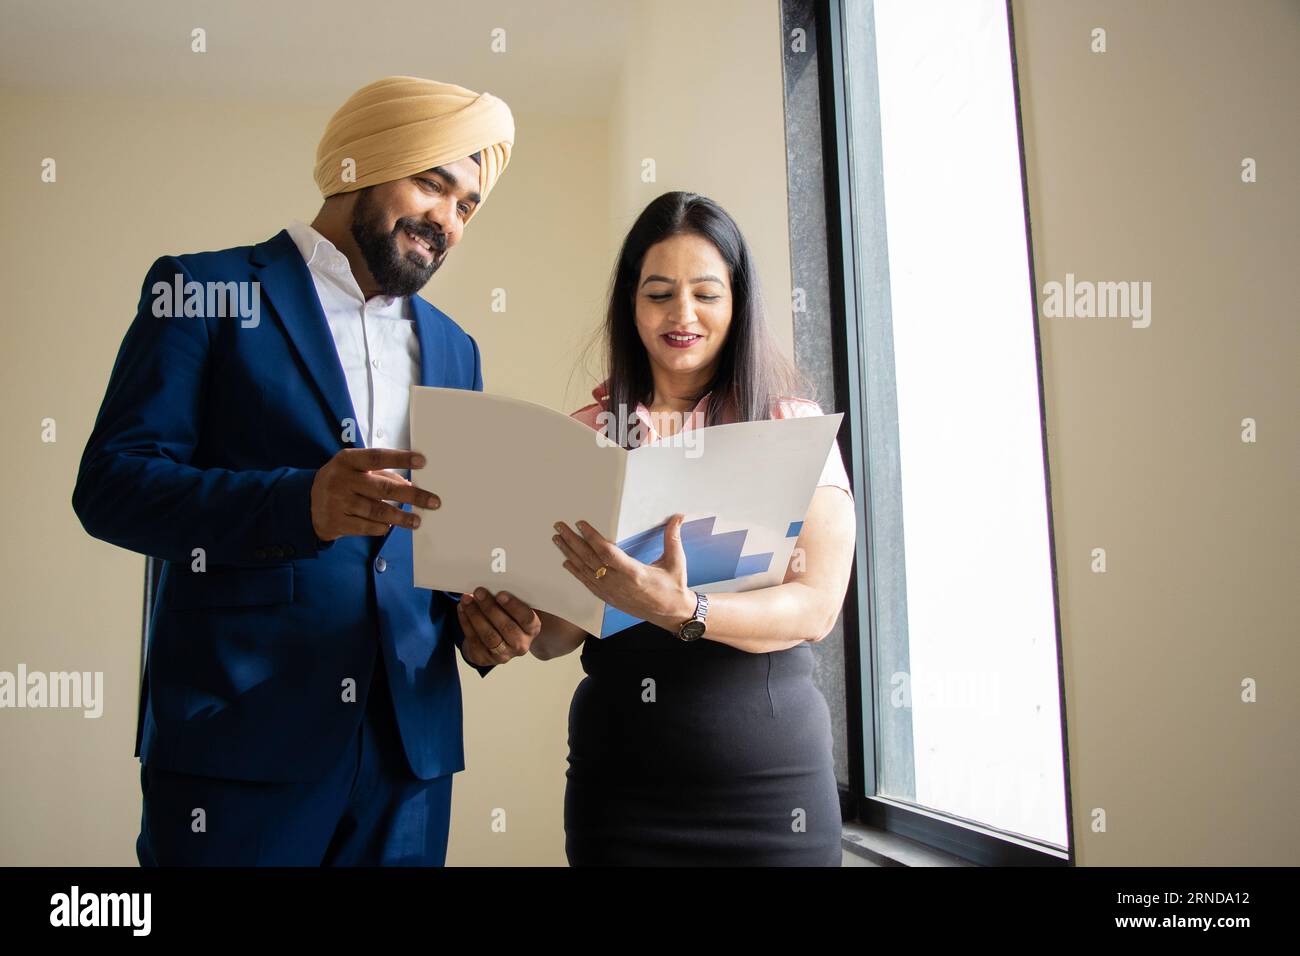 Indischer sikh-Geschäftsmann in formeller Kleidung diskutiert Arbeit mit junger weiblicher Sekretärin, die Akten im Firmenbüro hält. Stockfoto